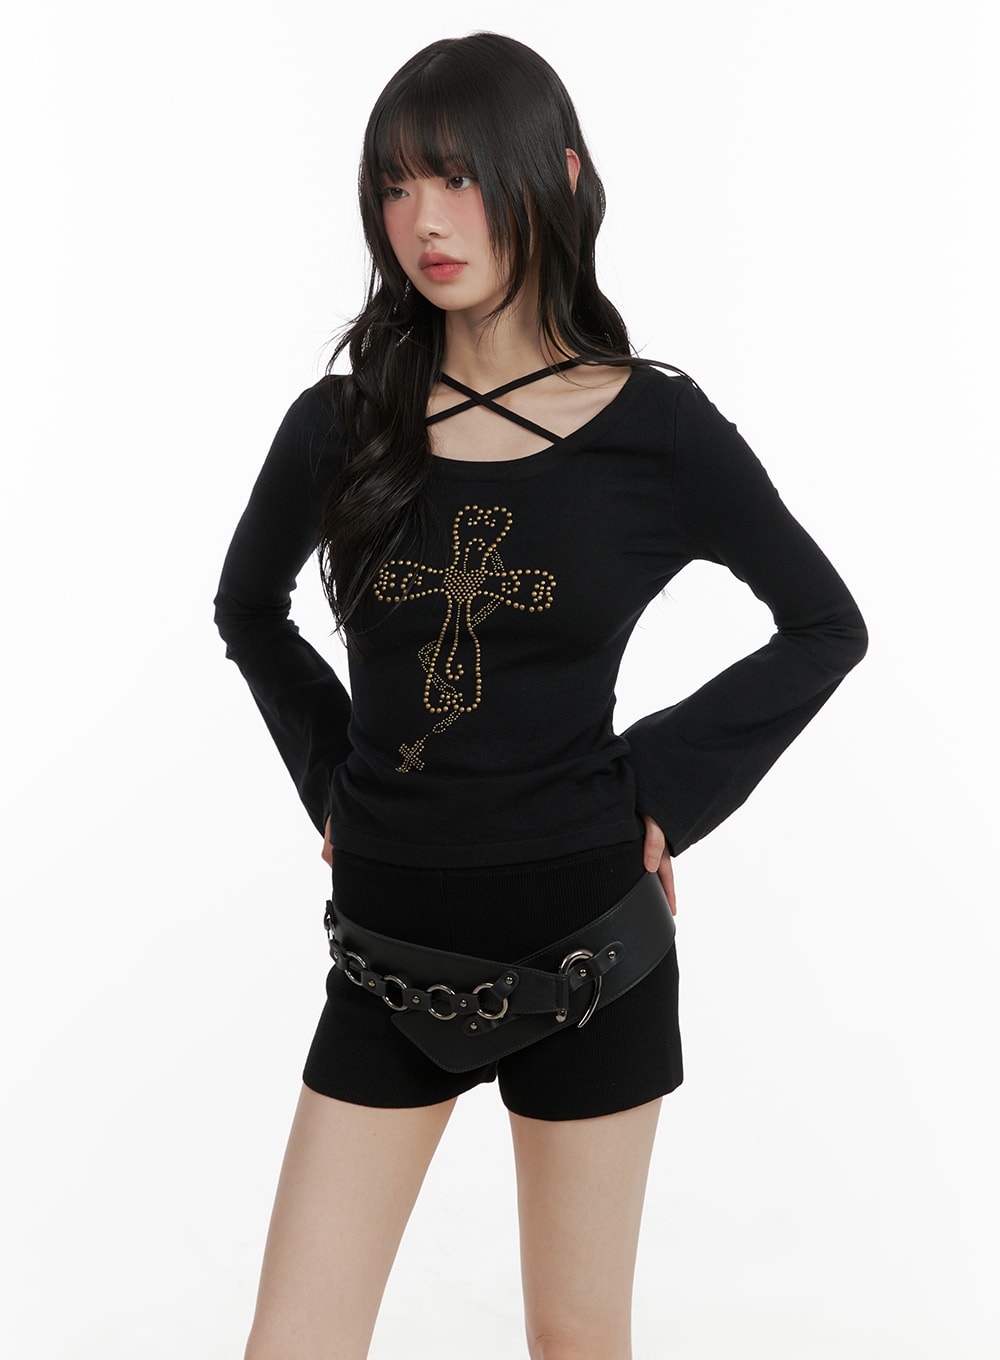 Grunge X-Strap Graphic Top CA419 - Korean Women's Fashion | LEWKIN